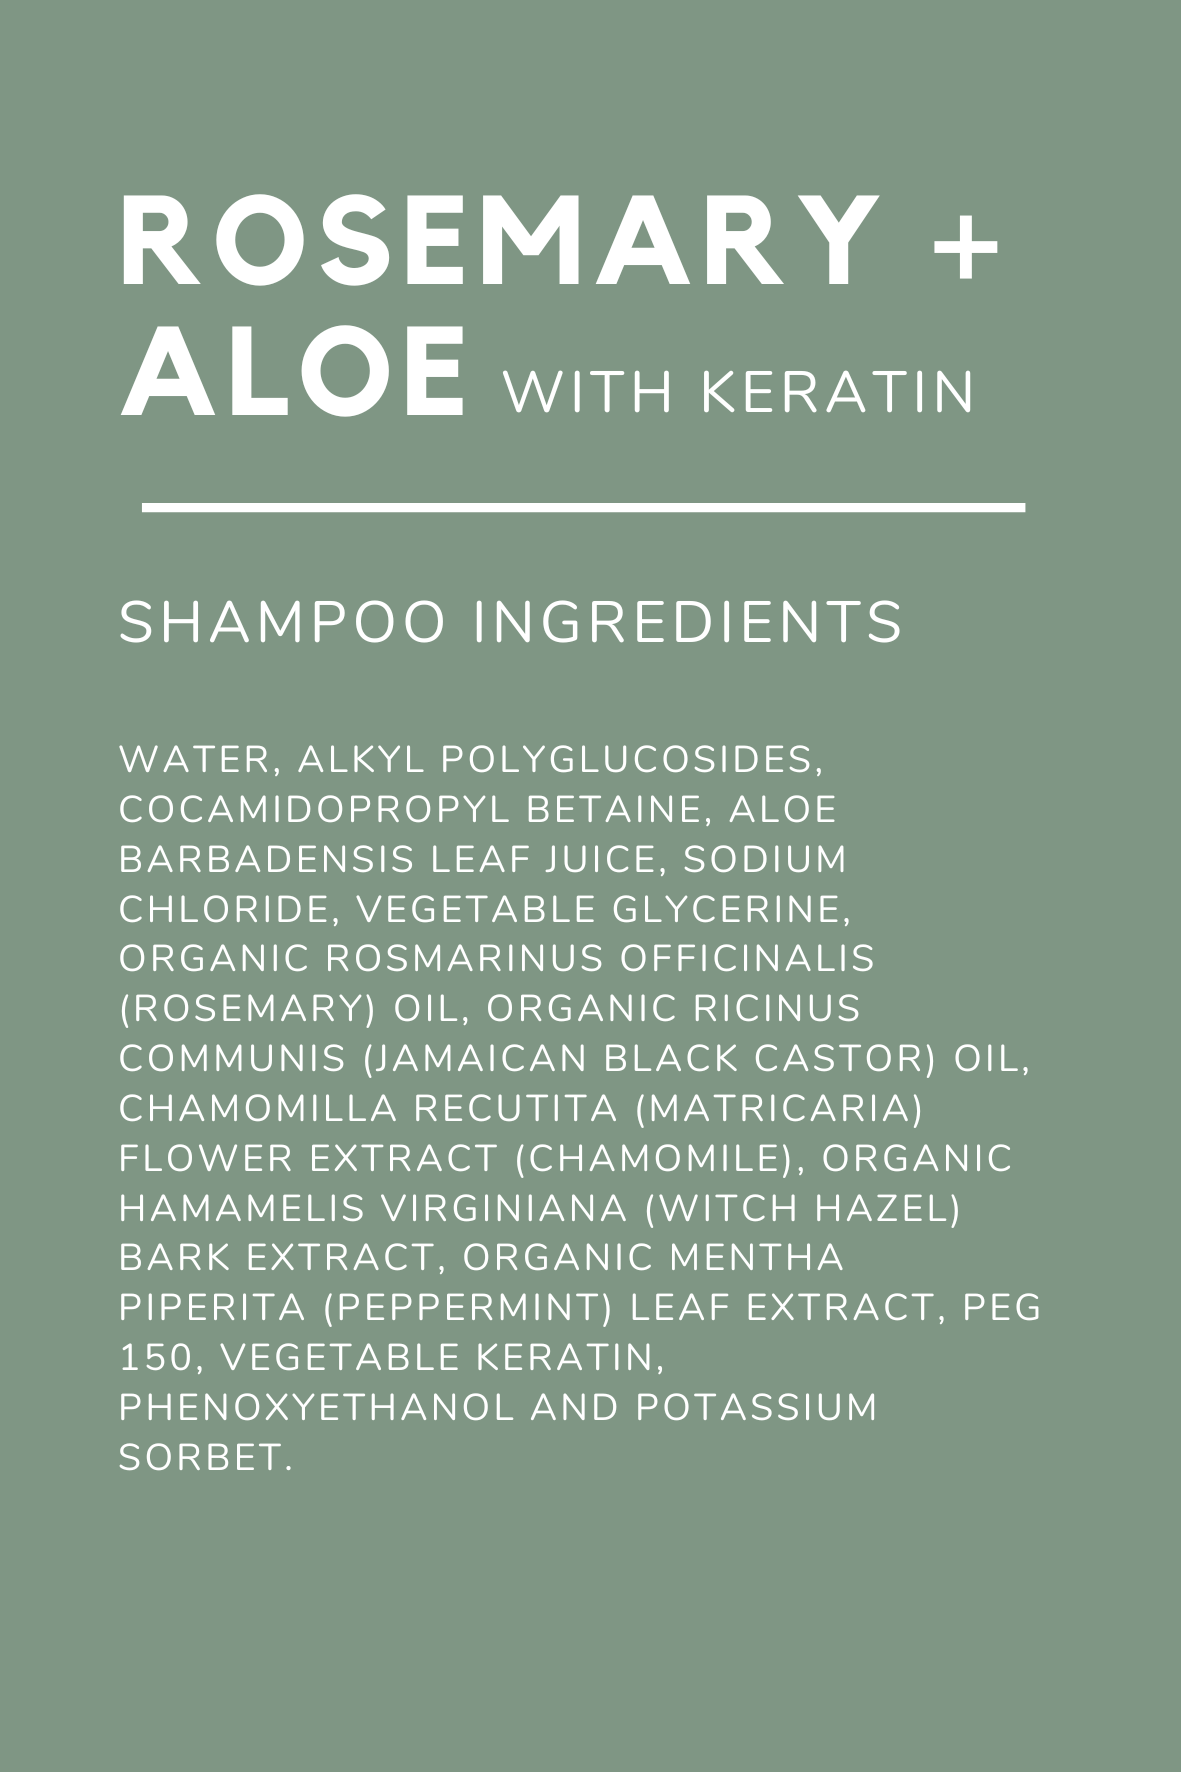 *NEW* ROSEMARY + ALOE with Vegetable Keratin - 8oz. Shampoo - Wild Revival Organics